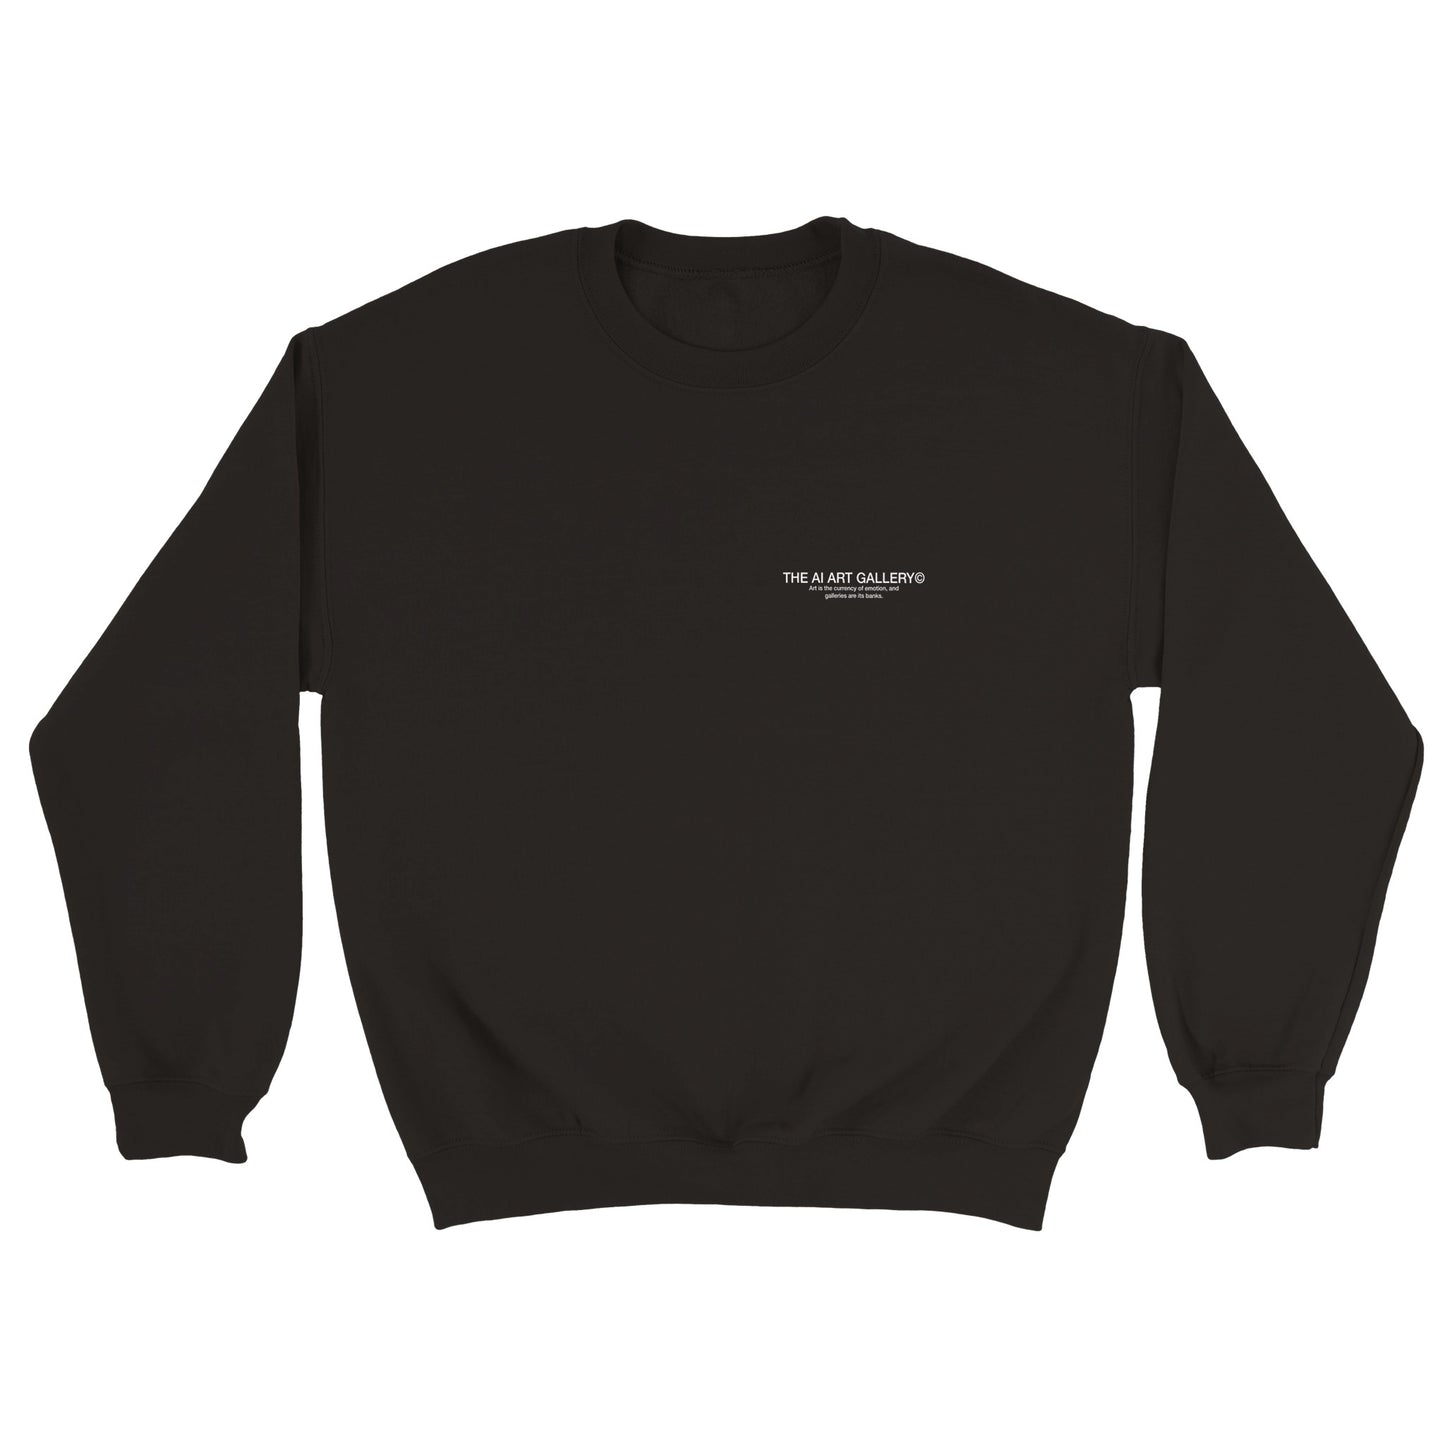 CANVAS CONNAISSEUR /  Sweatshirt / black